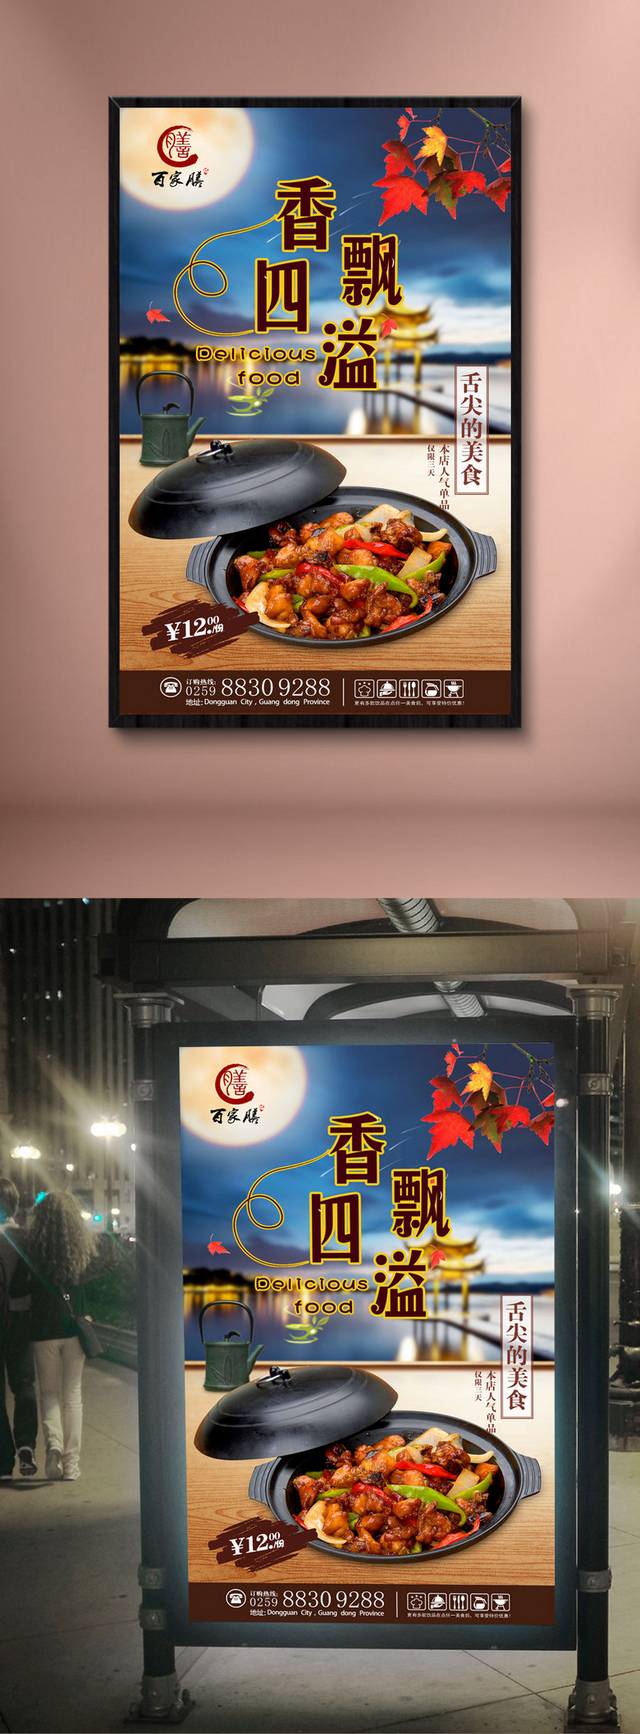 三杯鸡美食宣传海报设计